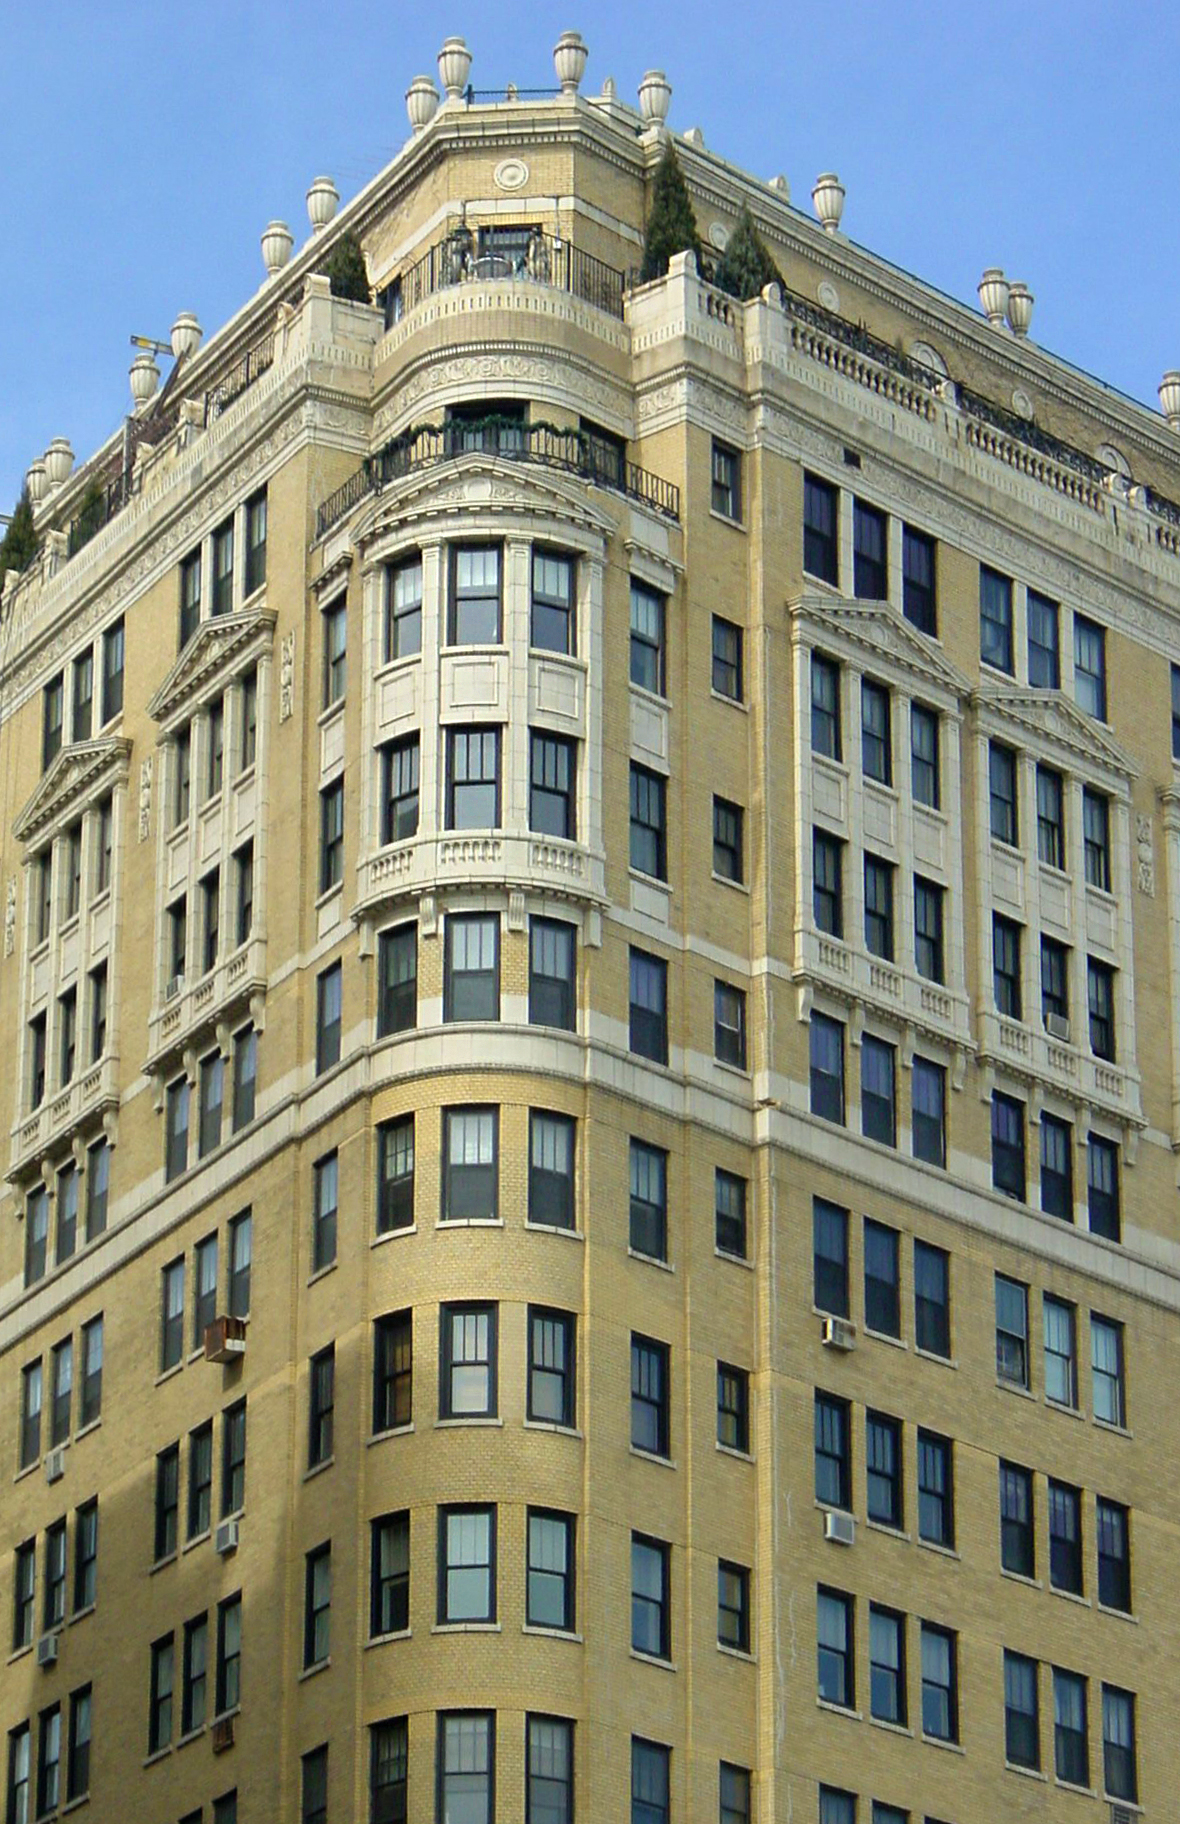 exterior facade inspection, City of Chicago facade ordinance, highrise, skyscraper, brick concrerte stone terra cotta exterior inspection